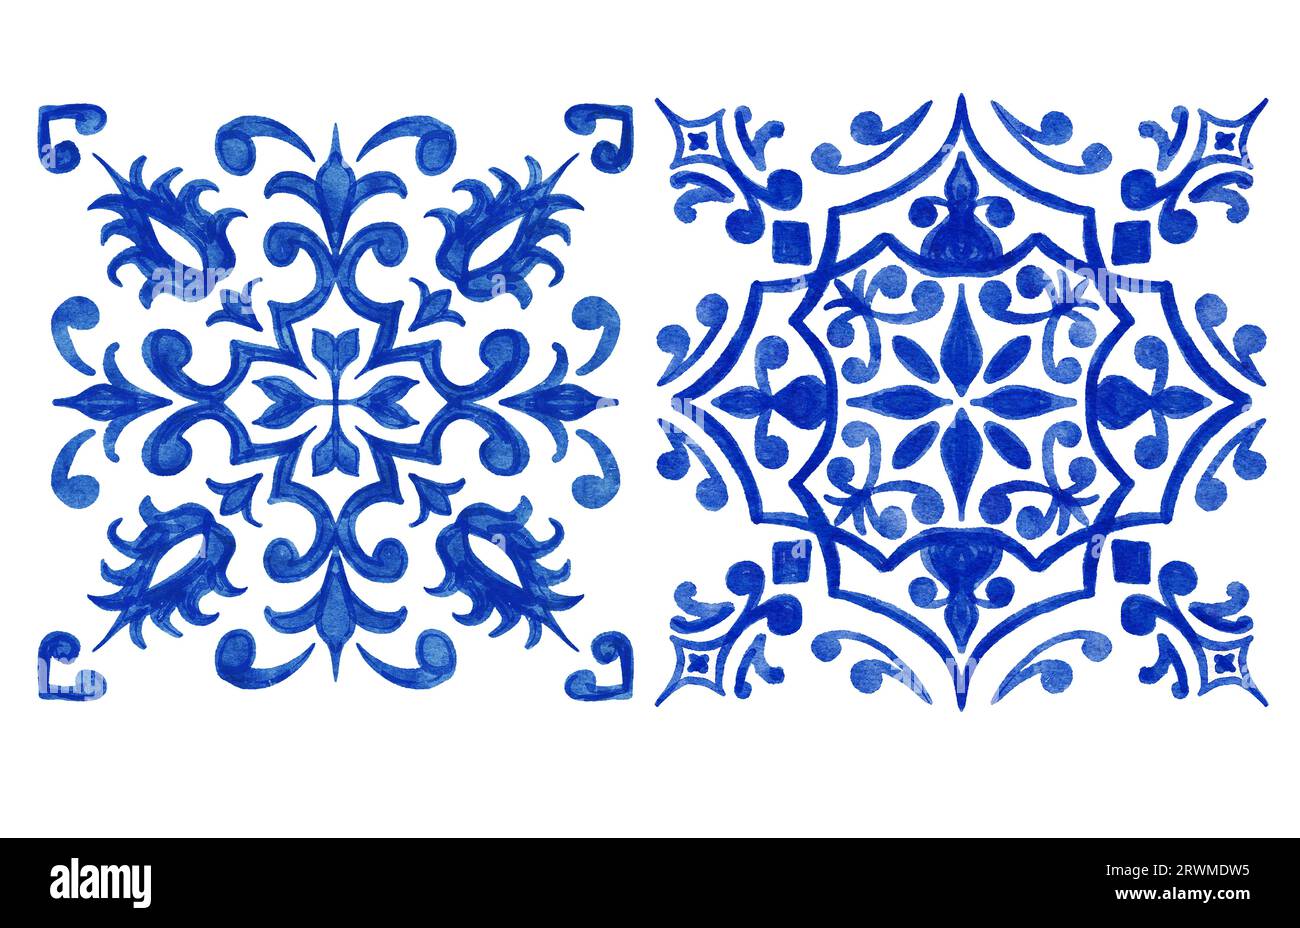 Handgezeichnete Aquarellzeichnung mit blauen weißen azulejo portugiesischen Keramikfliesen. Ethnische portugal geomentrische Indigo wiederholte Wandbodendekoration. Arabischer ornamentaler Hintergrund Stockfoto